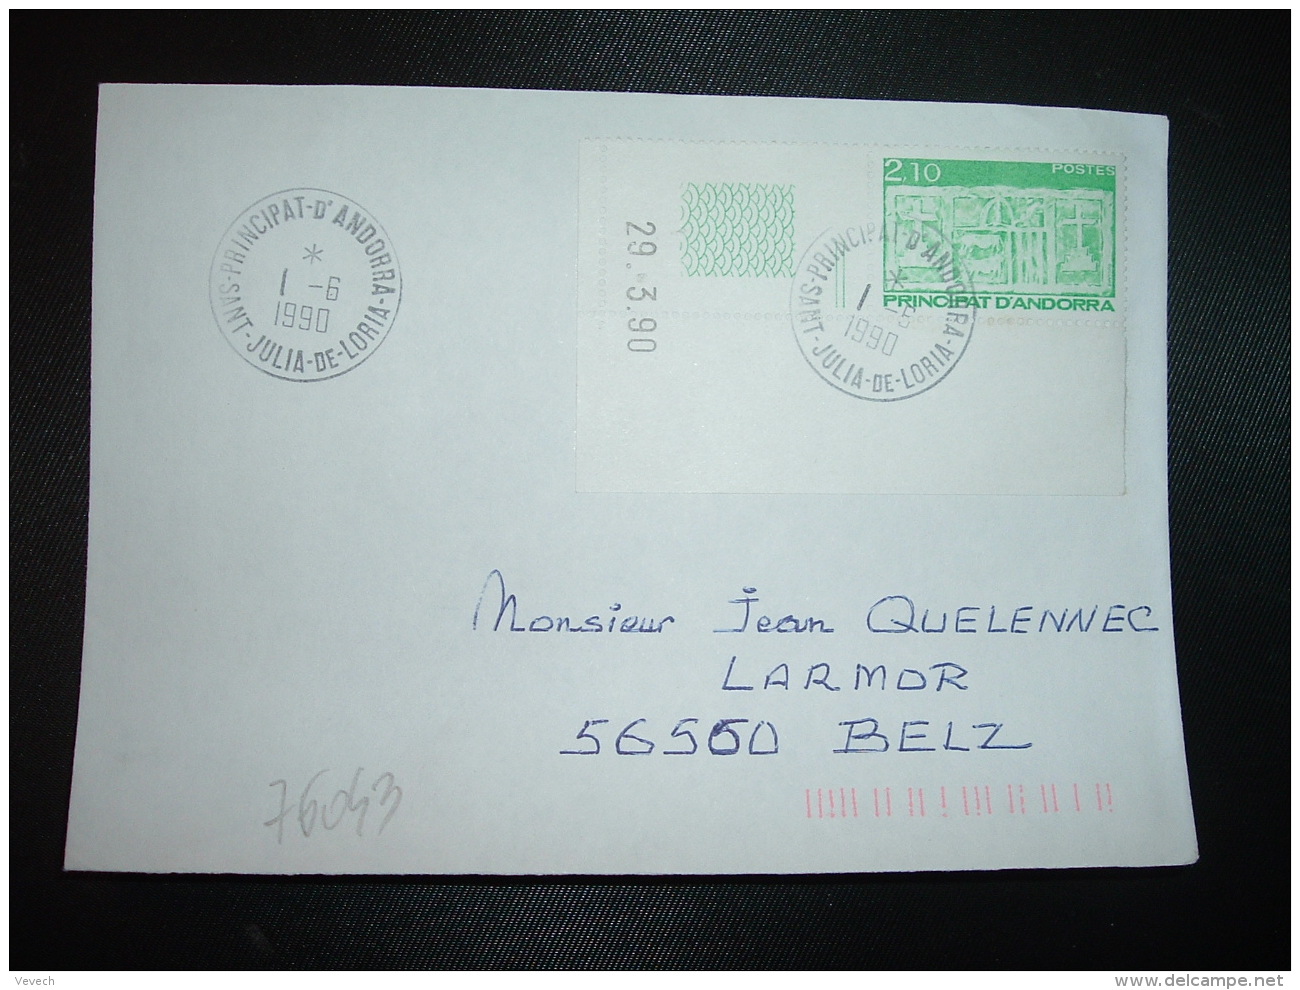 LETTRE TP 2,10 COIN DATE 29.3.90 OBL.1-6 1990 SAINT JULIA DE LORIA - Storia Postale